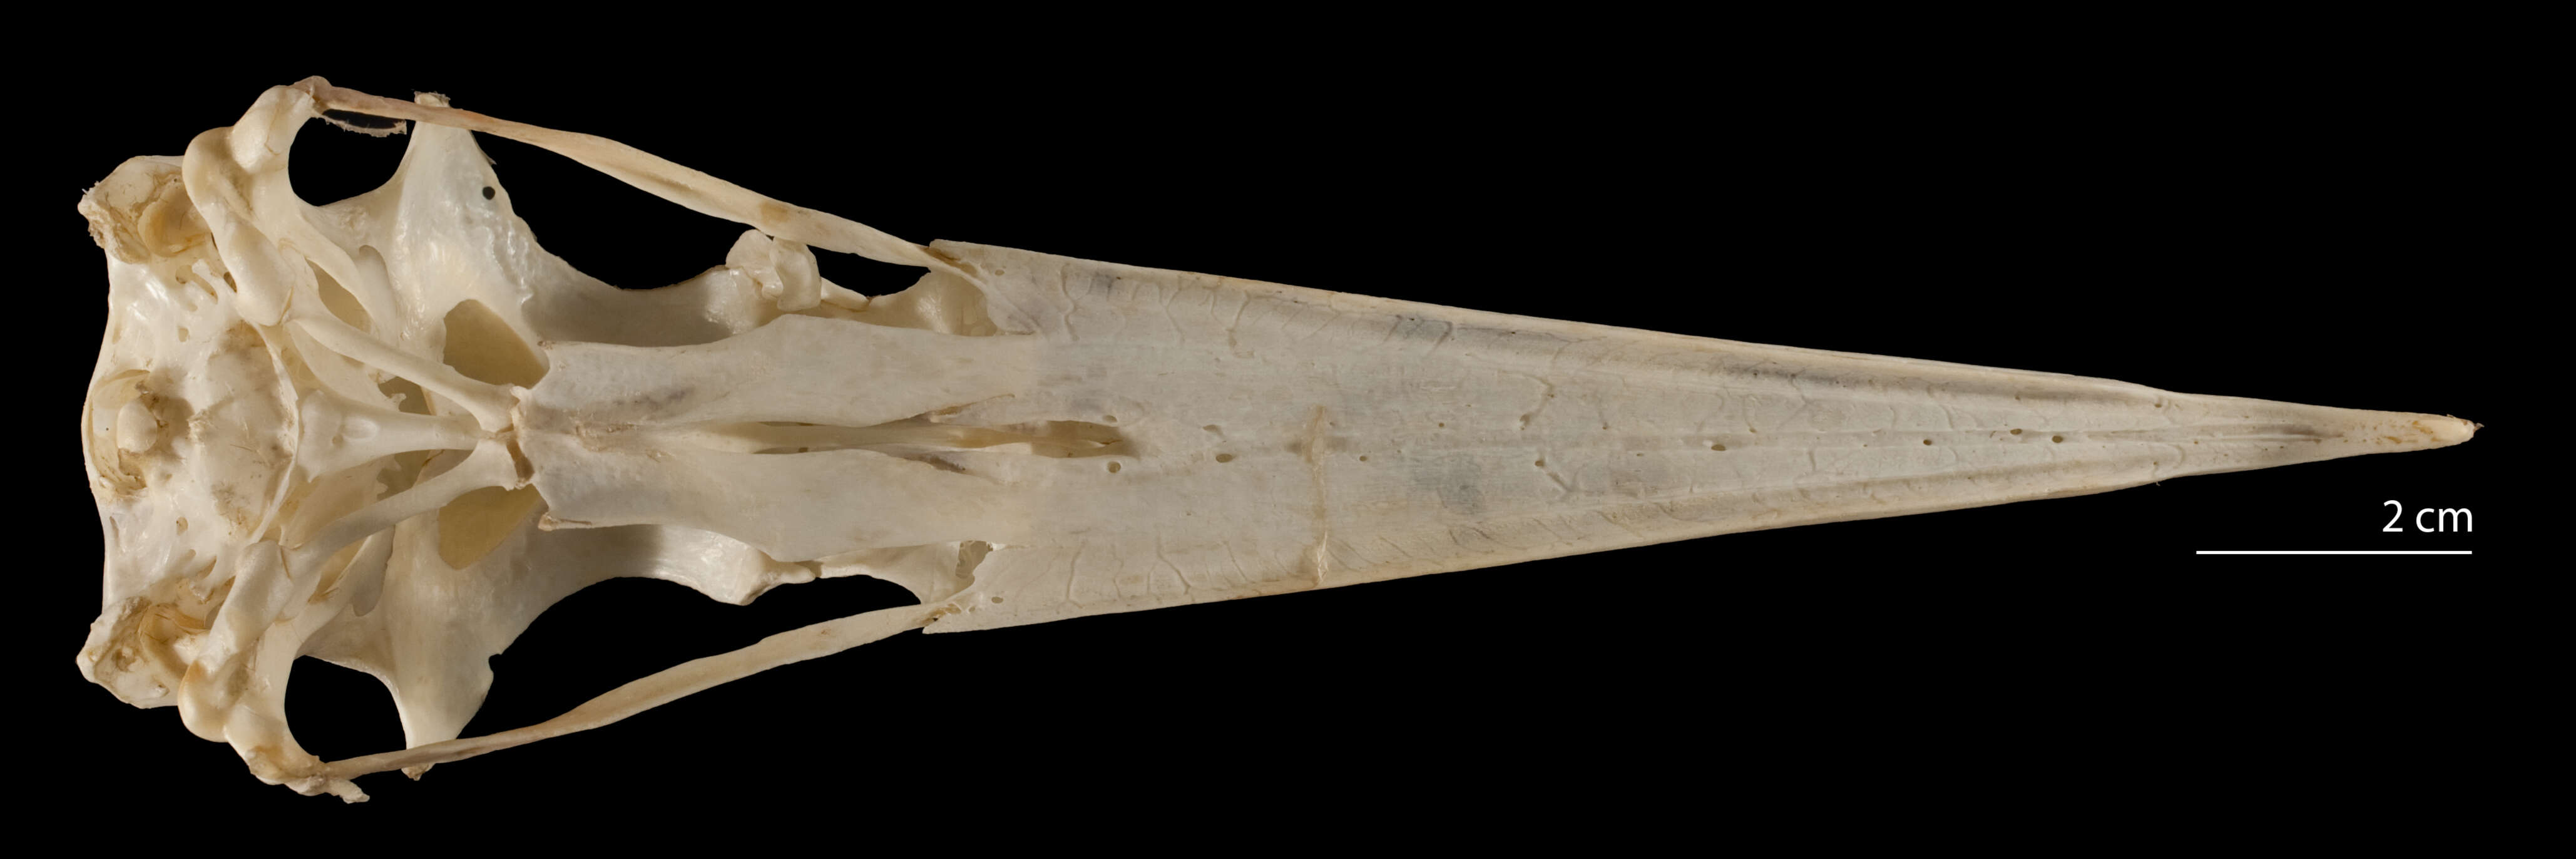 Plancia ëd Fregatidae